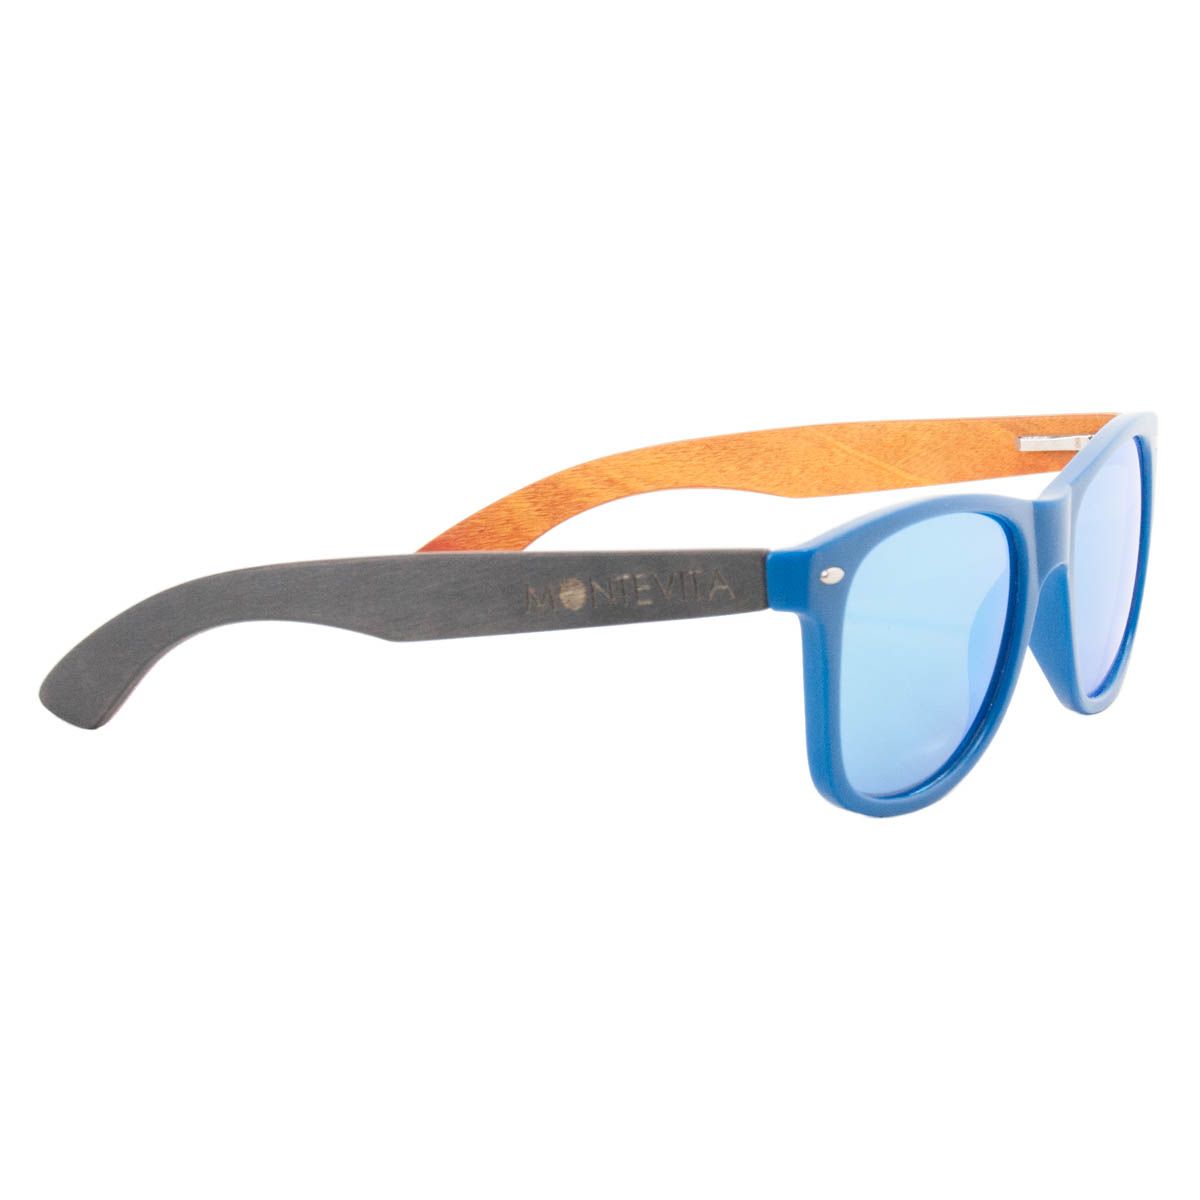 Montevita Classic Sunglasses in Blue